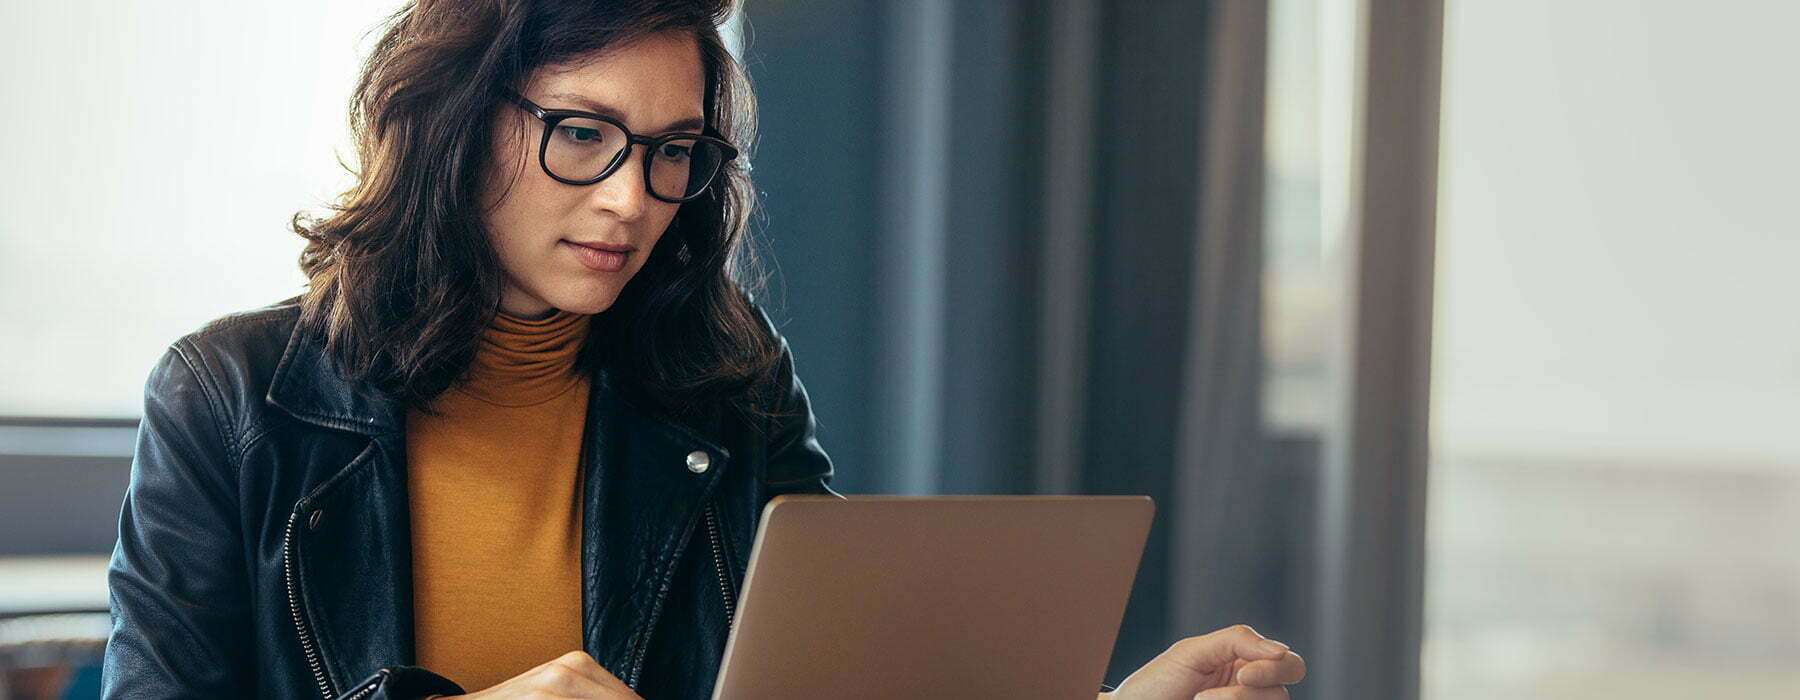 Lady in jean jacket focusing on laptop